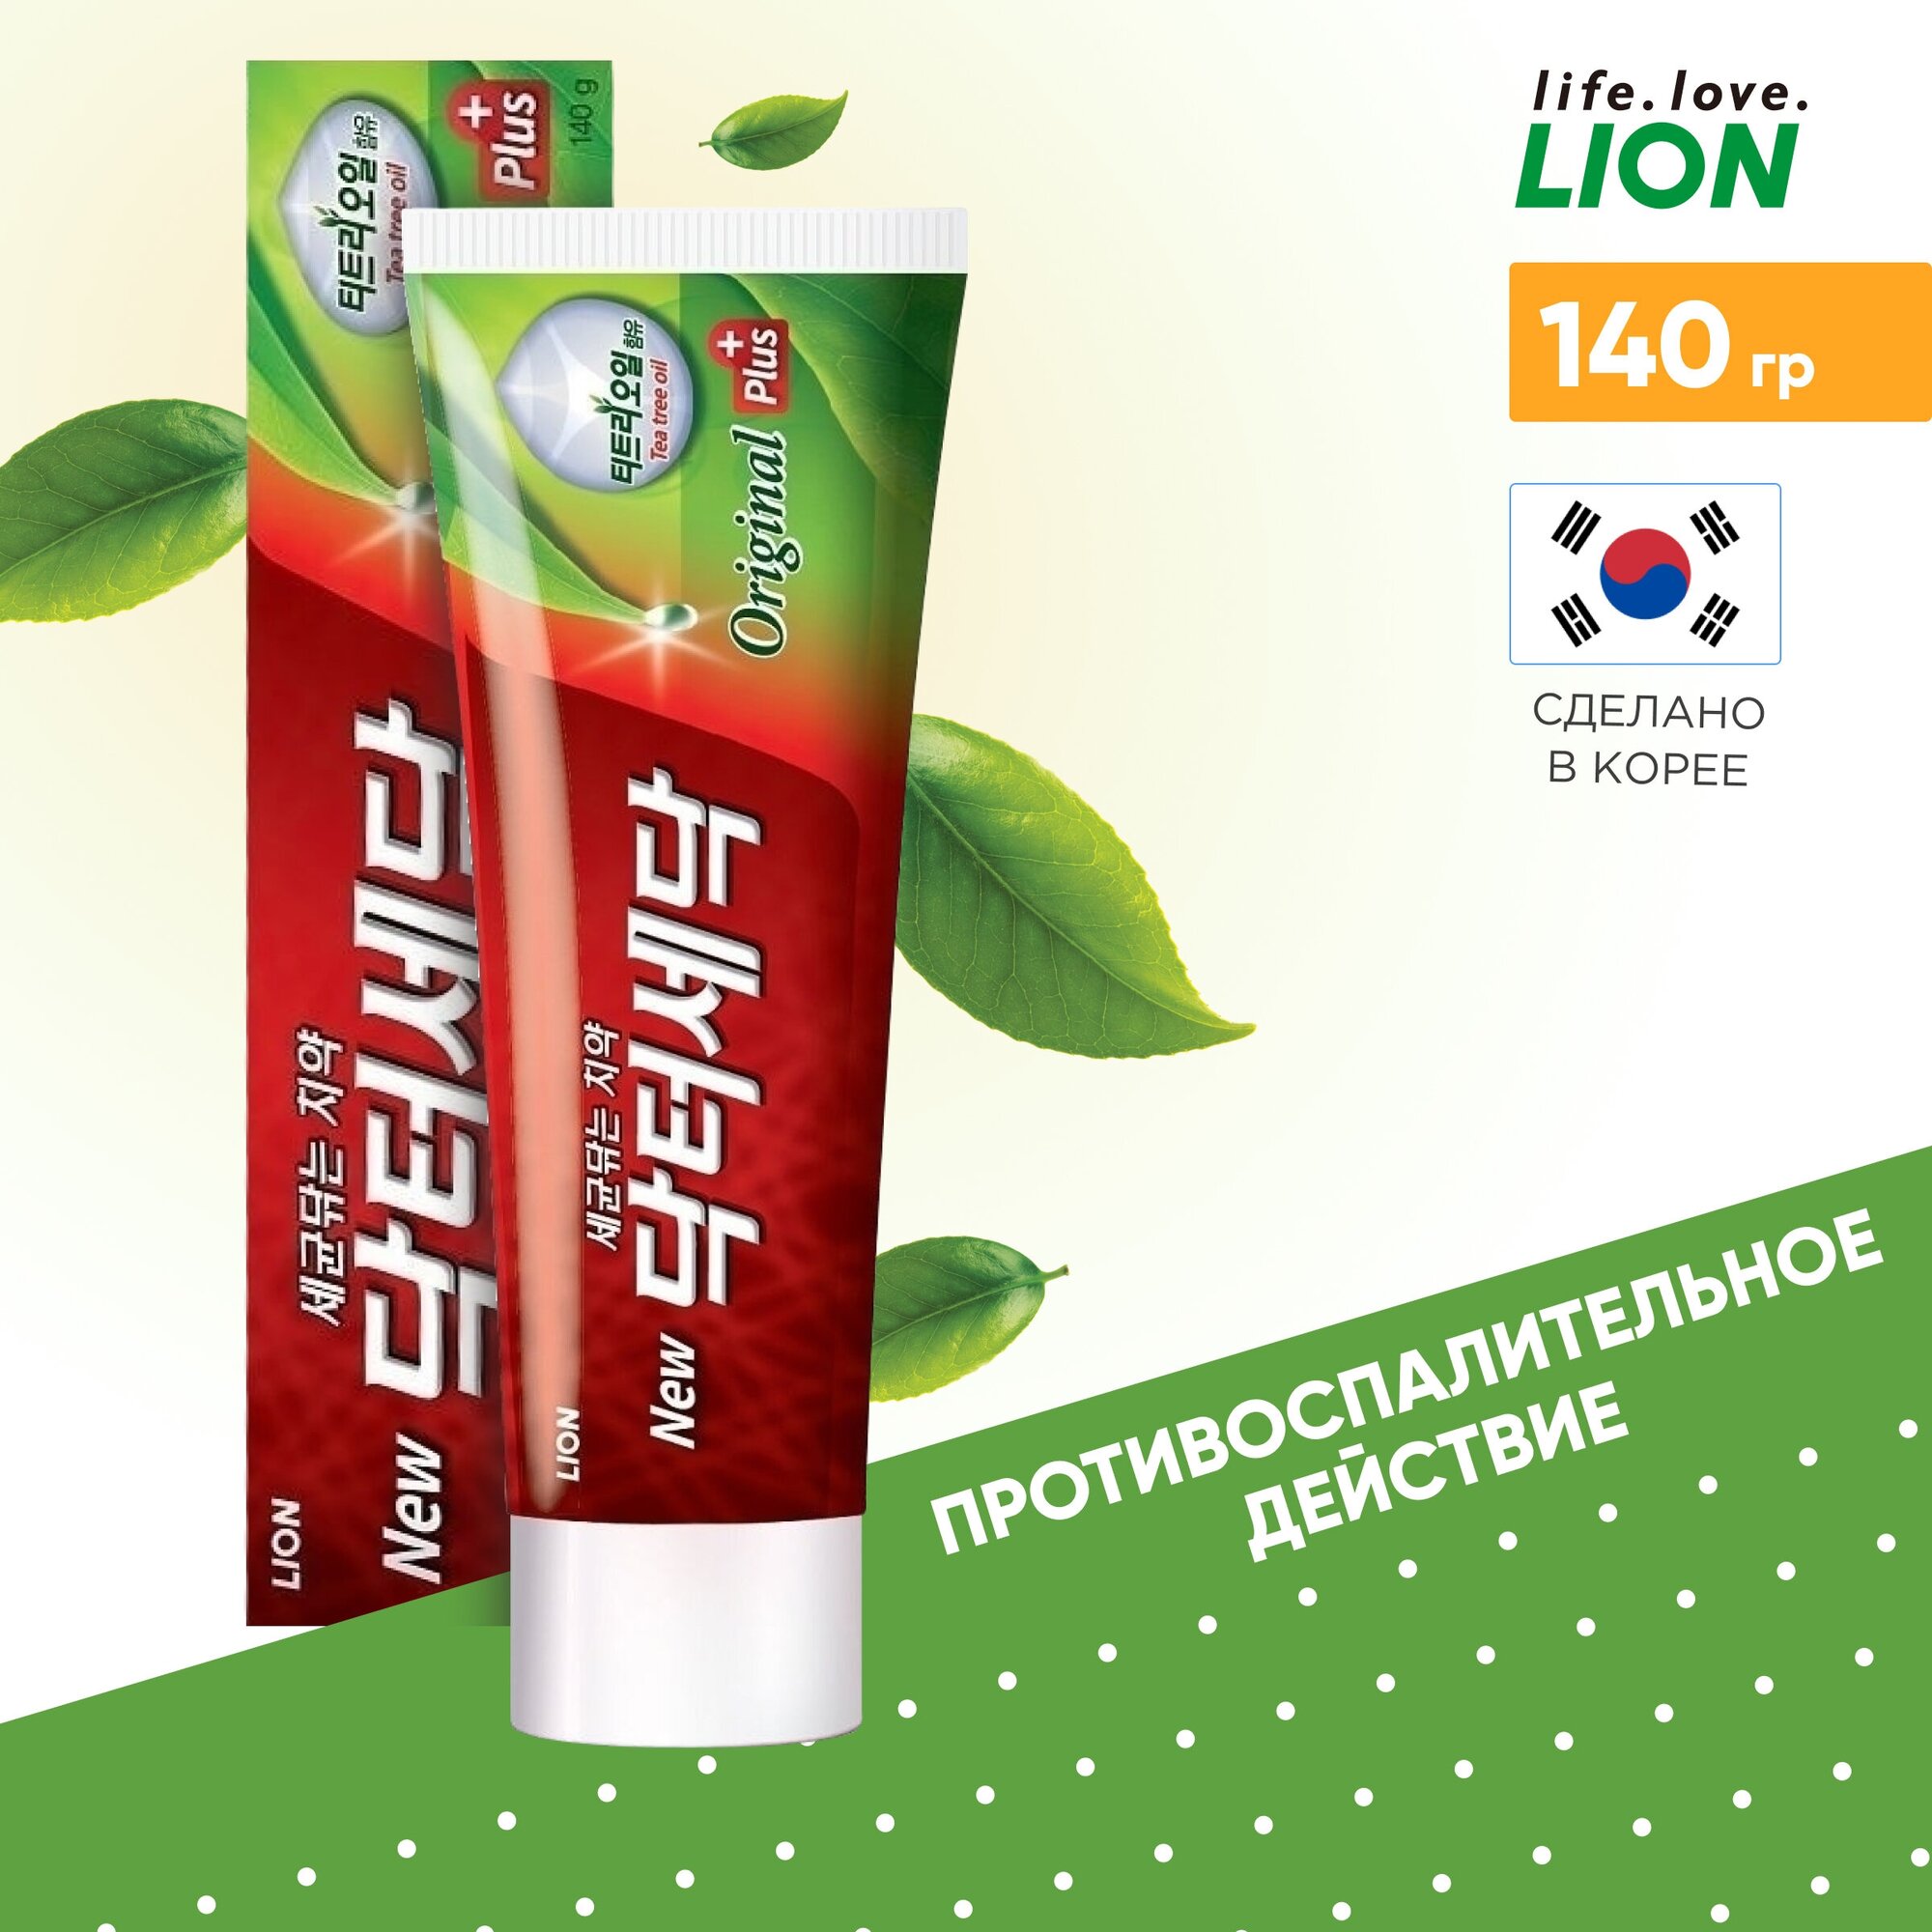 LION Зубная паста с экстрактом масла чайного дерева «DR. SEDOC»,140 гр.